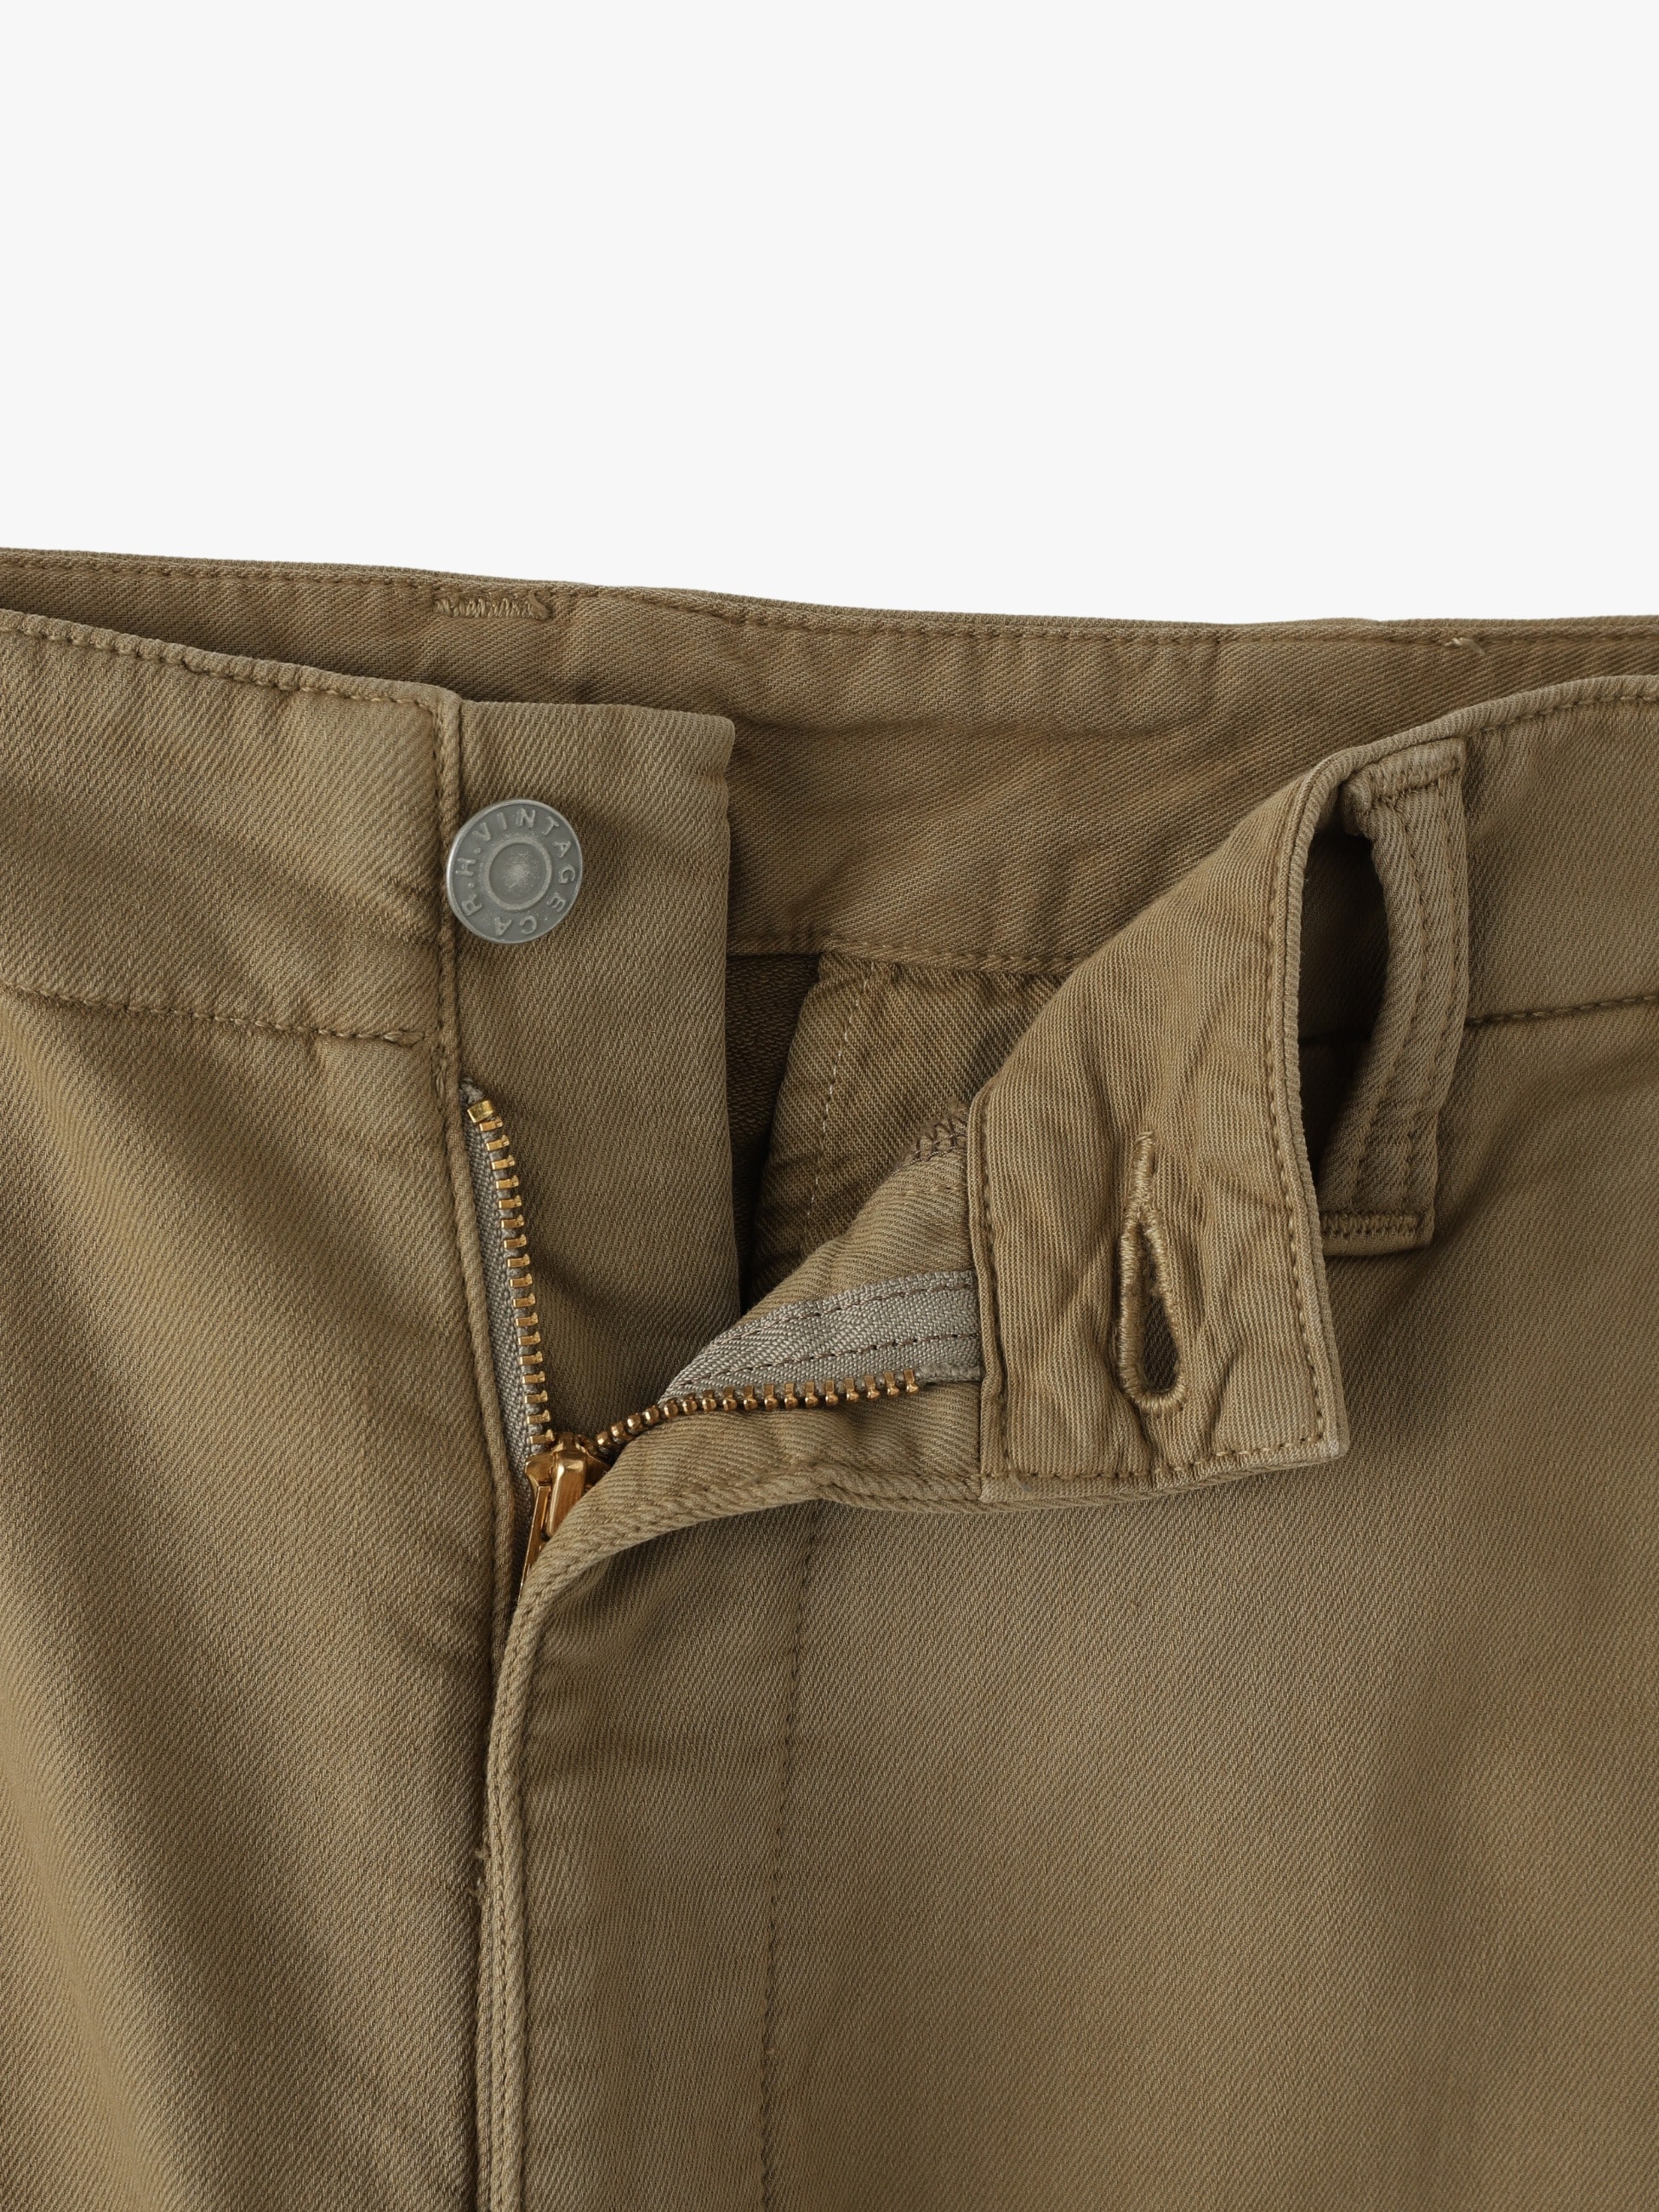 新品RHVintage OrganicCotton Chino Trousers-